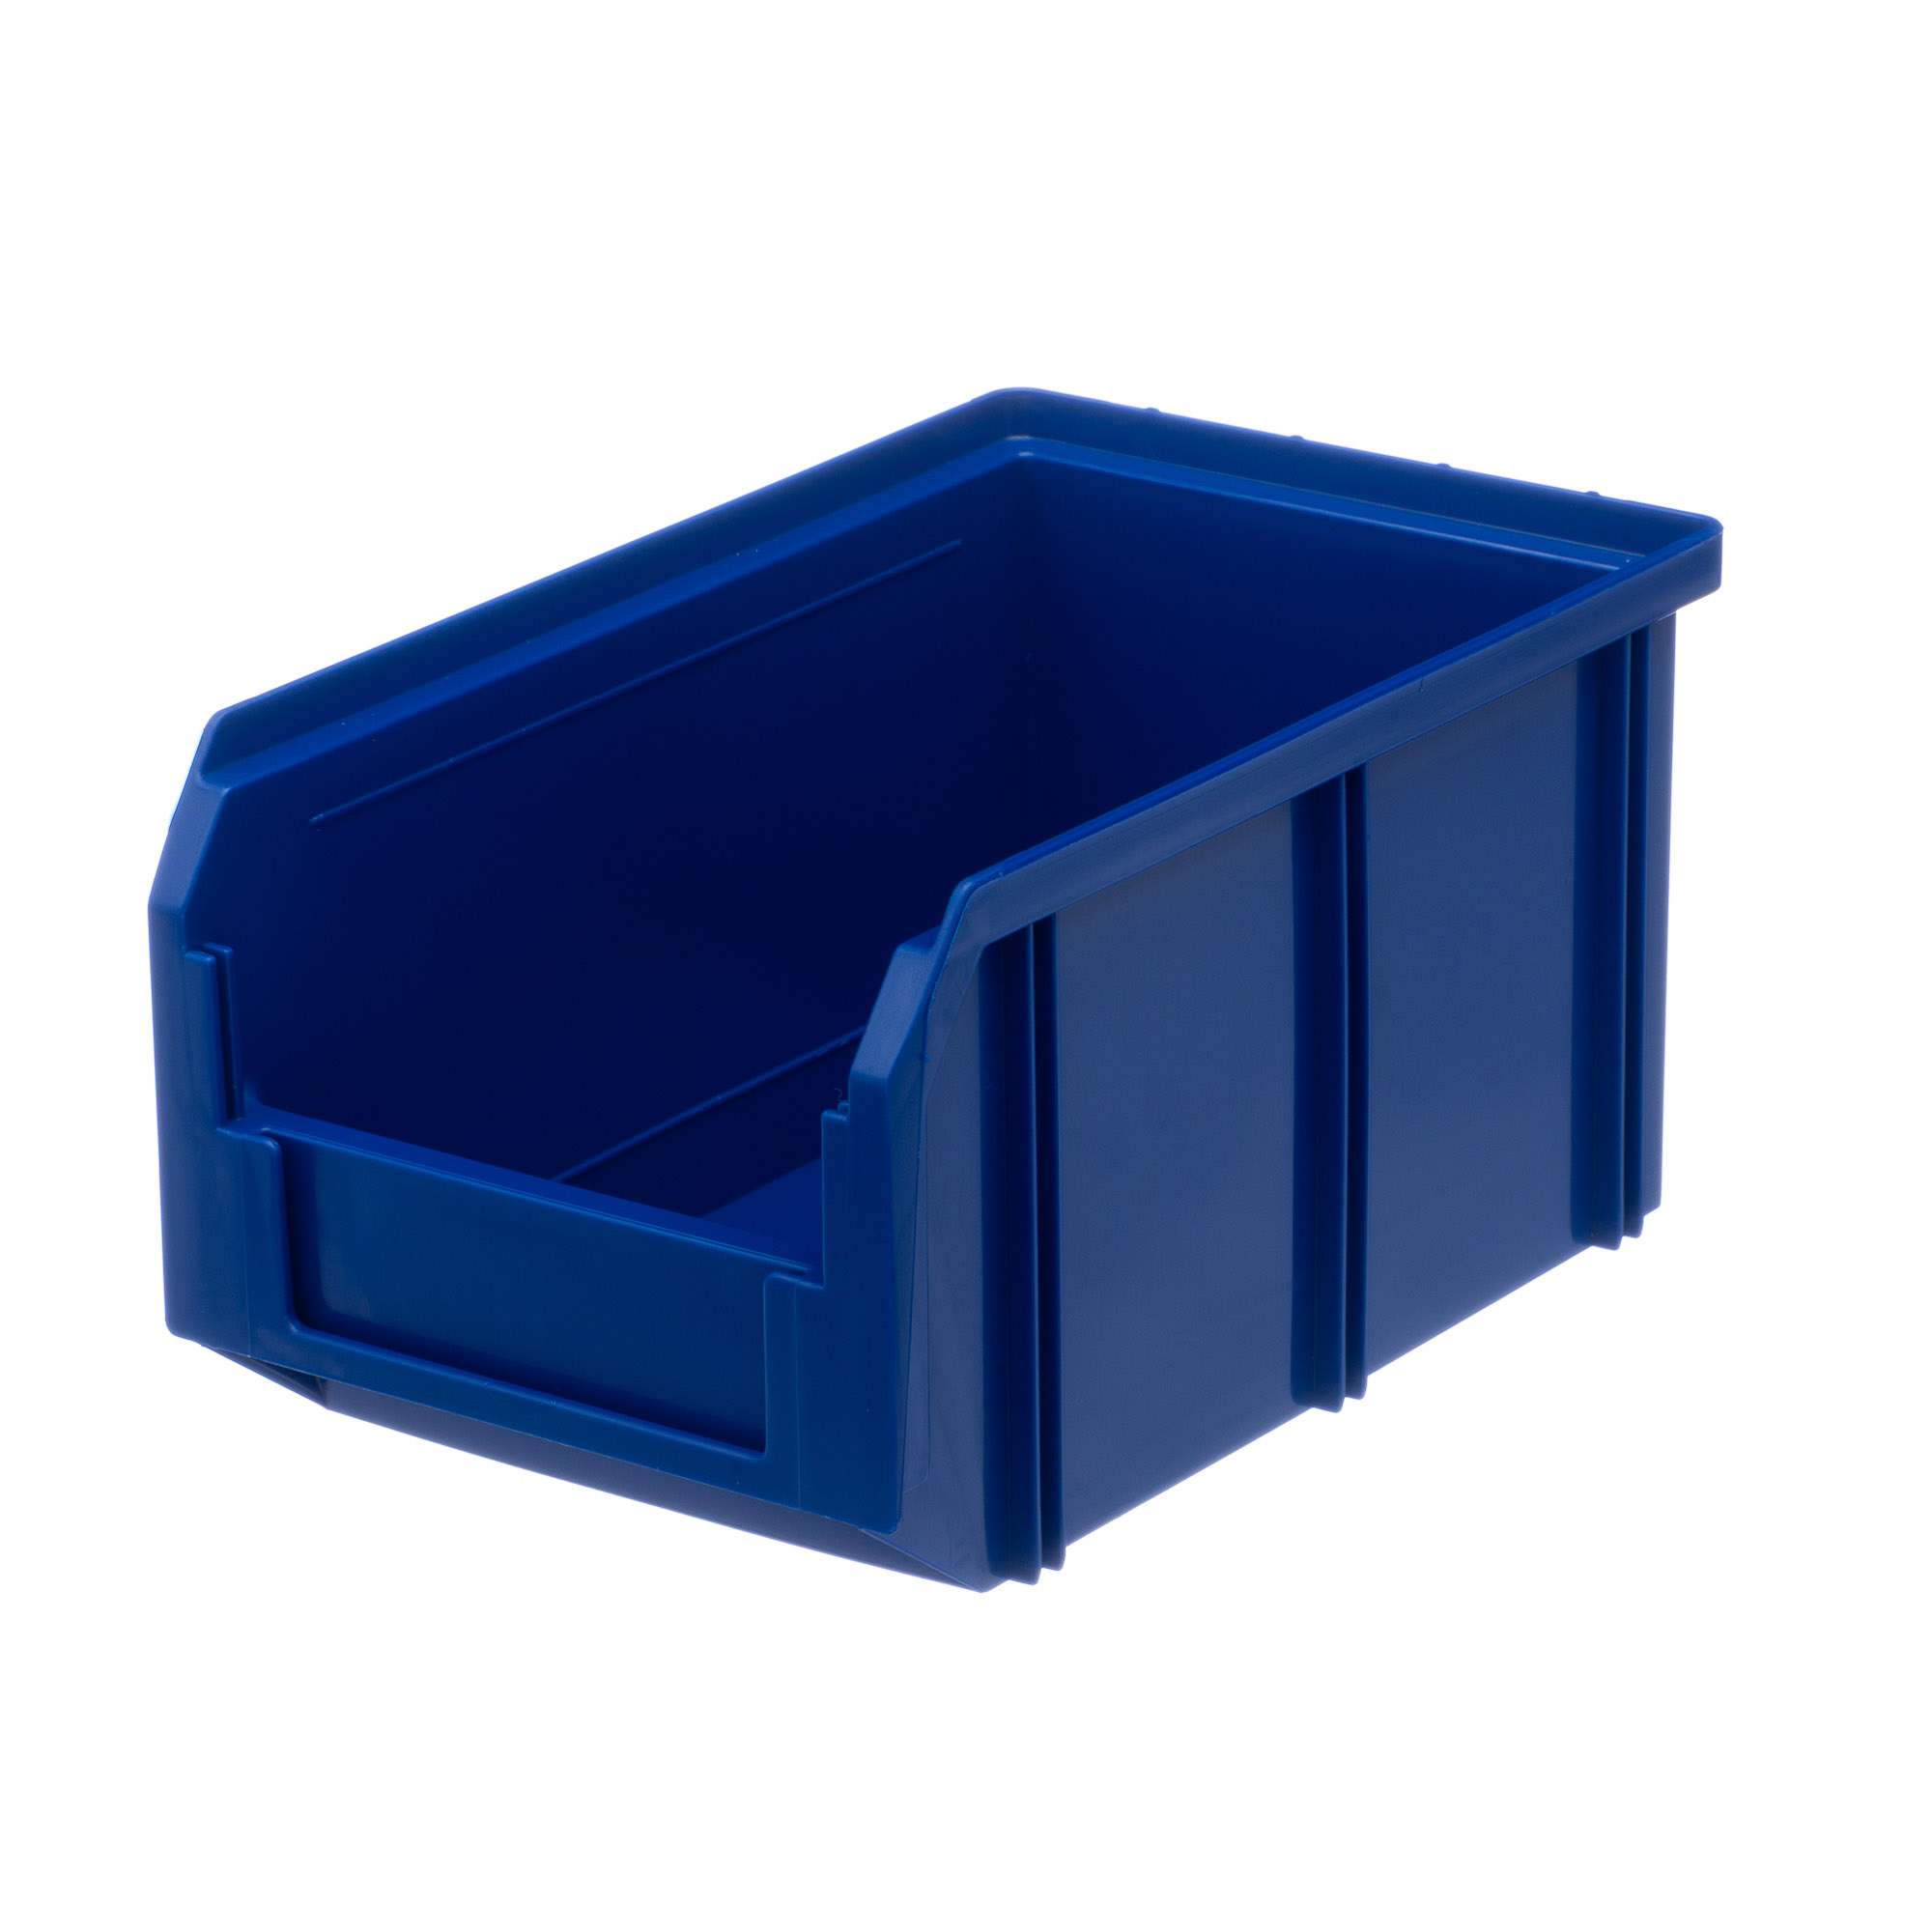 Пластиковый ящик Стелла-техник V-2-синий 234х149х120мм, 3,8 литра пластиковый лоток для крепежа курс